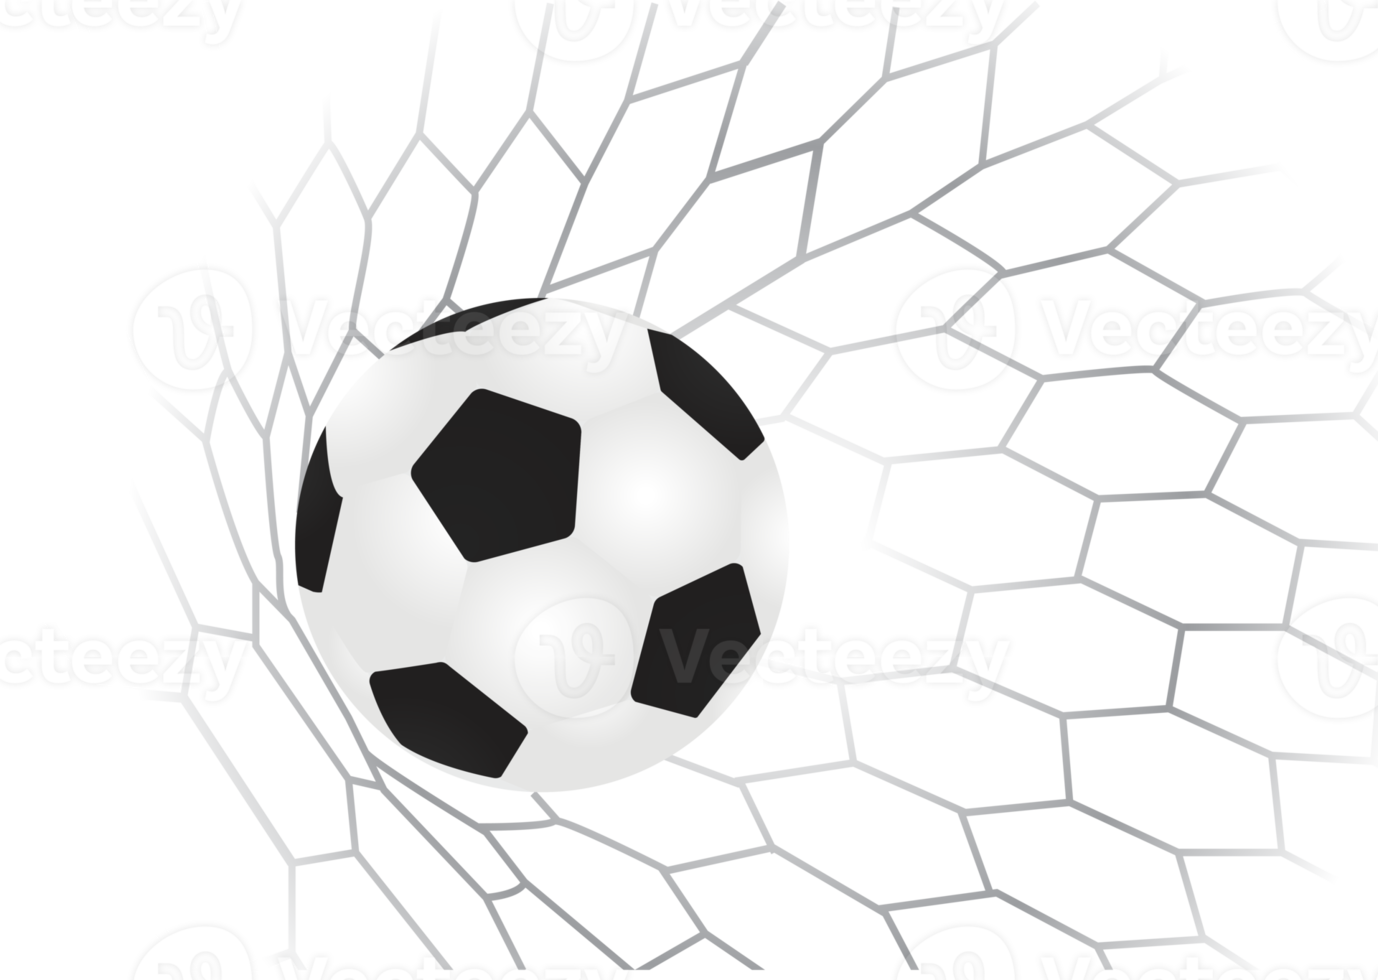 bola de futebol no gol com rede png